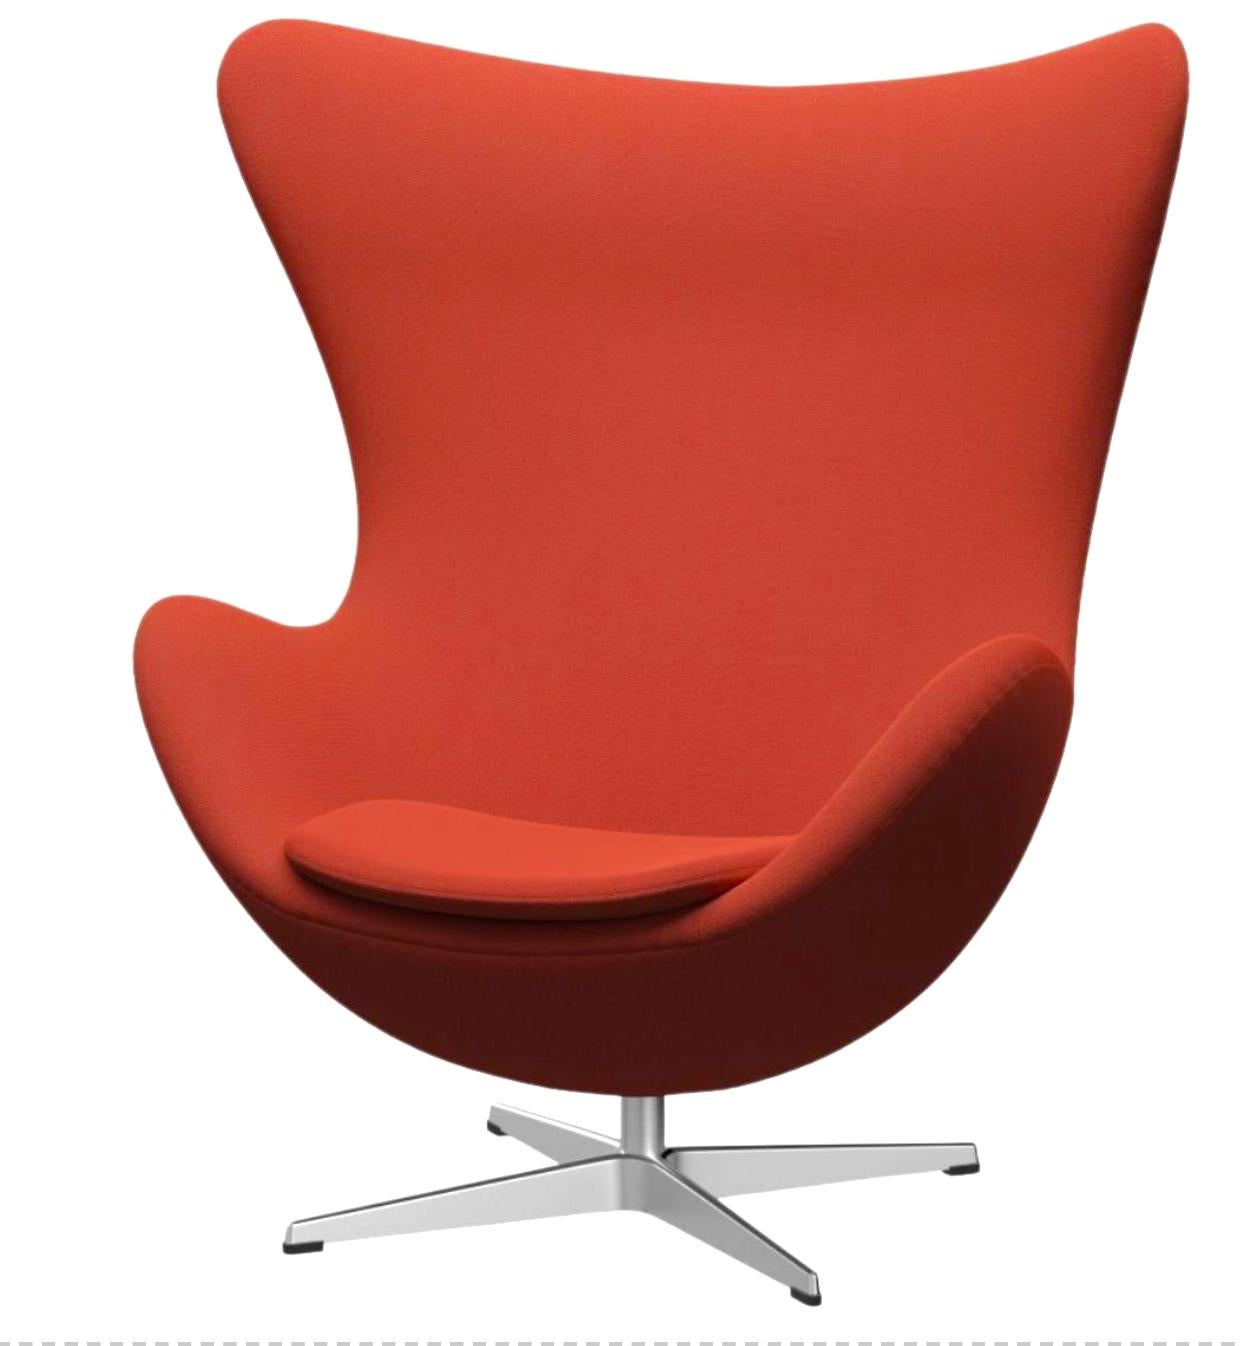 La chaise Egg d'Arne Jacobsen est un chef-d'œuvre du design danois. Jacobsen a trouvé la forme parfaite de la chaise en expérimentant avec du fil de fer et du plâtre dans son garage. Aujourd'hui, la chaise Egg est reconnue dans le monde entier comme